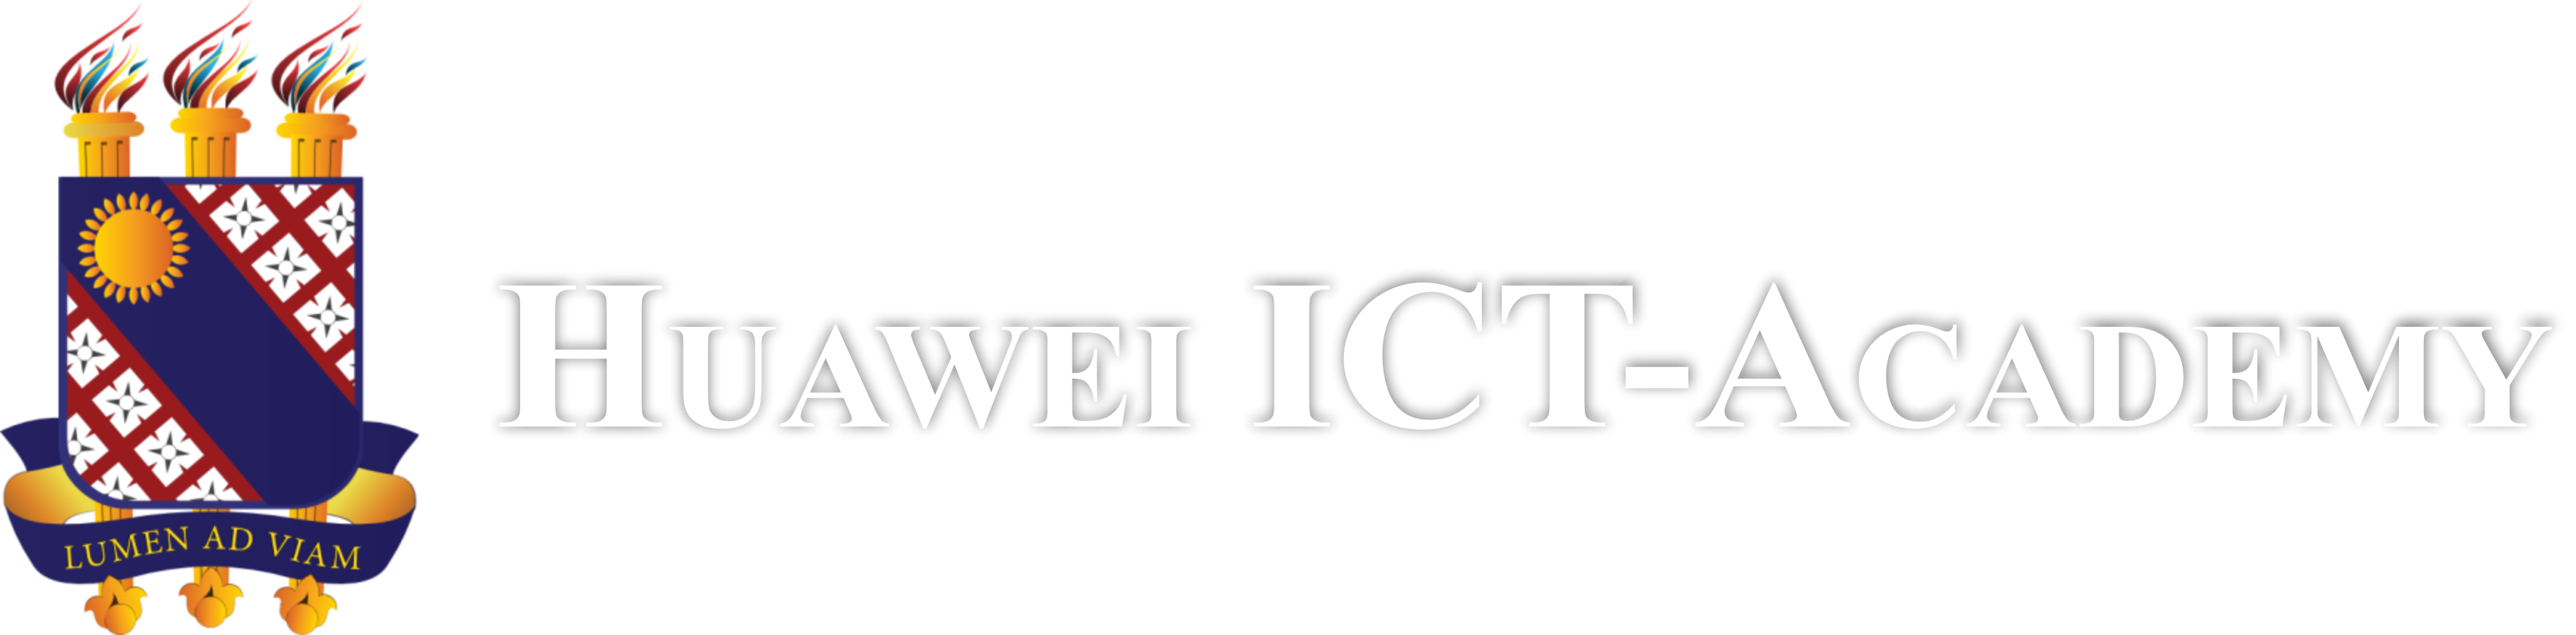 ICTc-claro